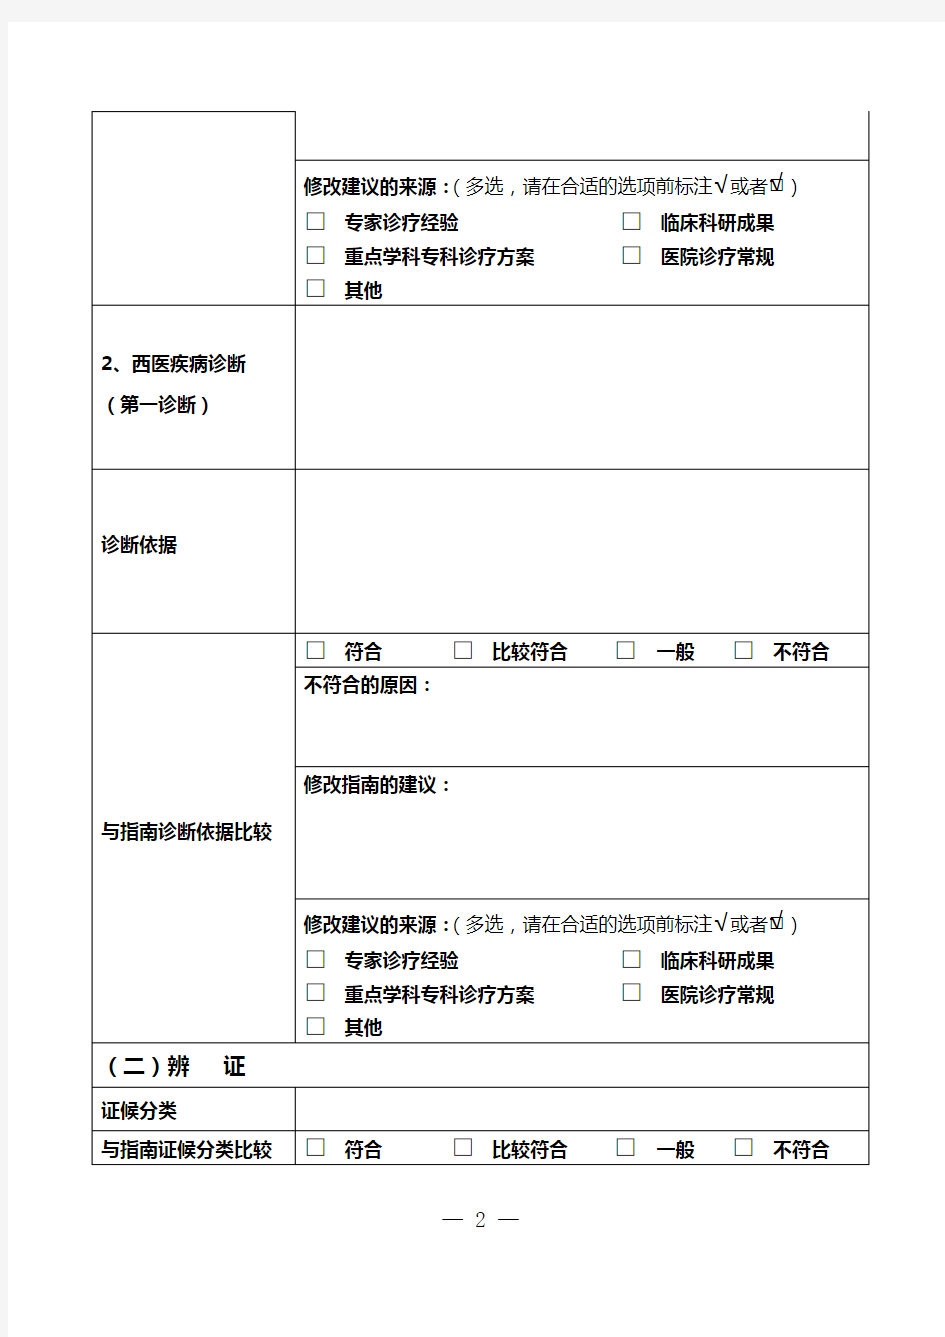 中医临床诊疗指南应用评价病例调查表